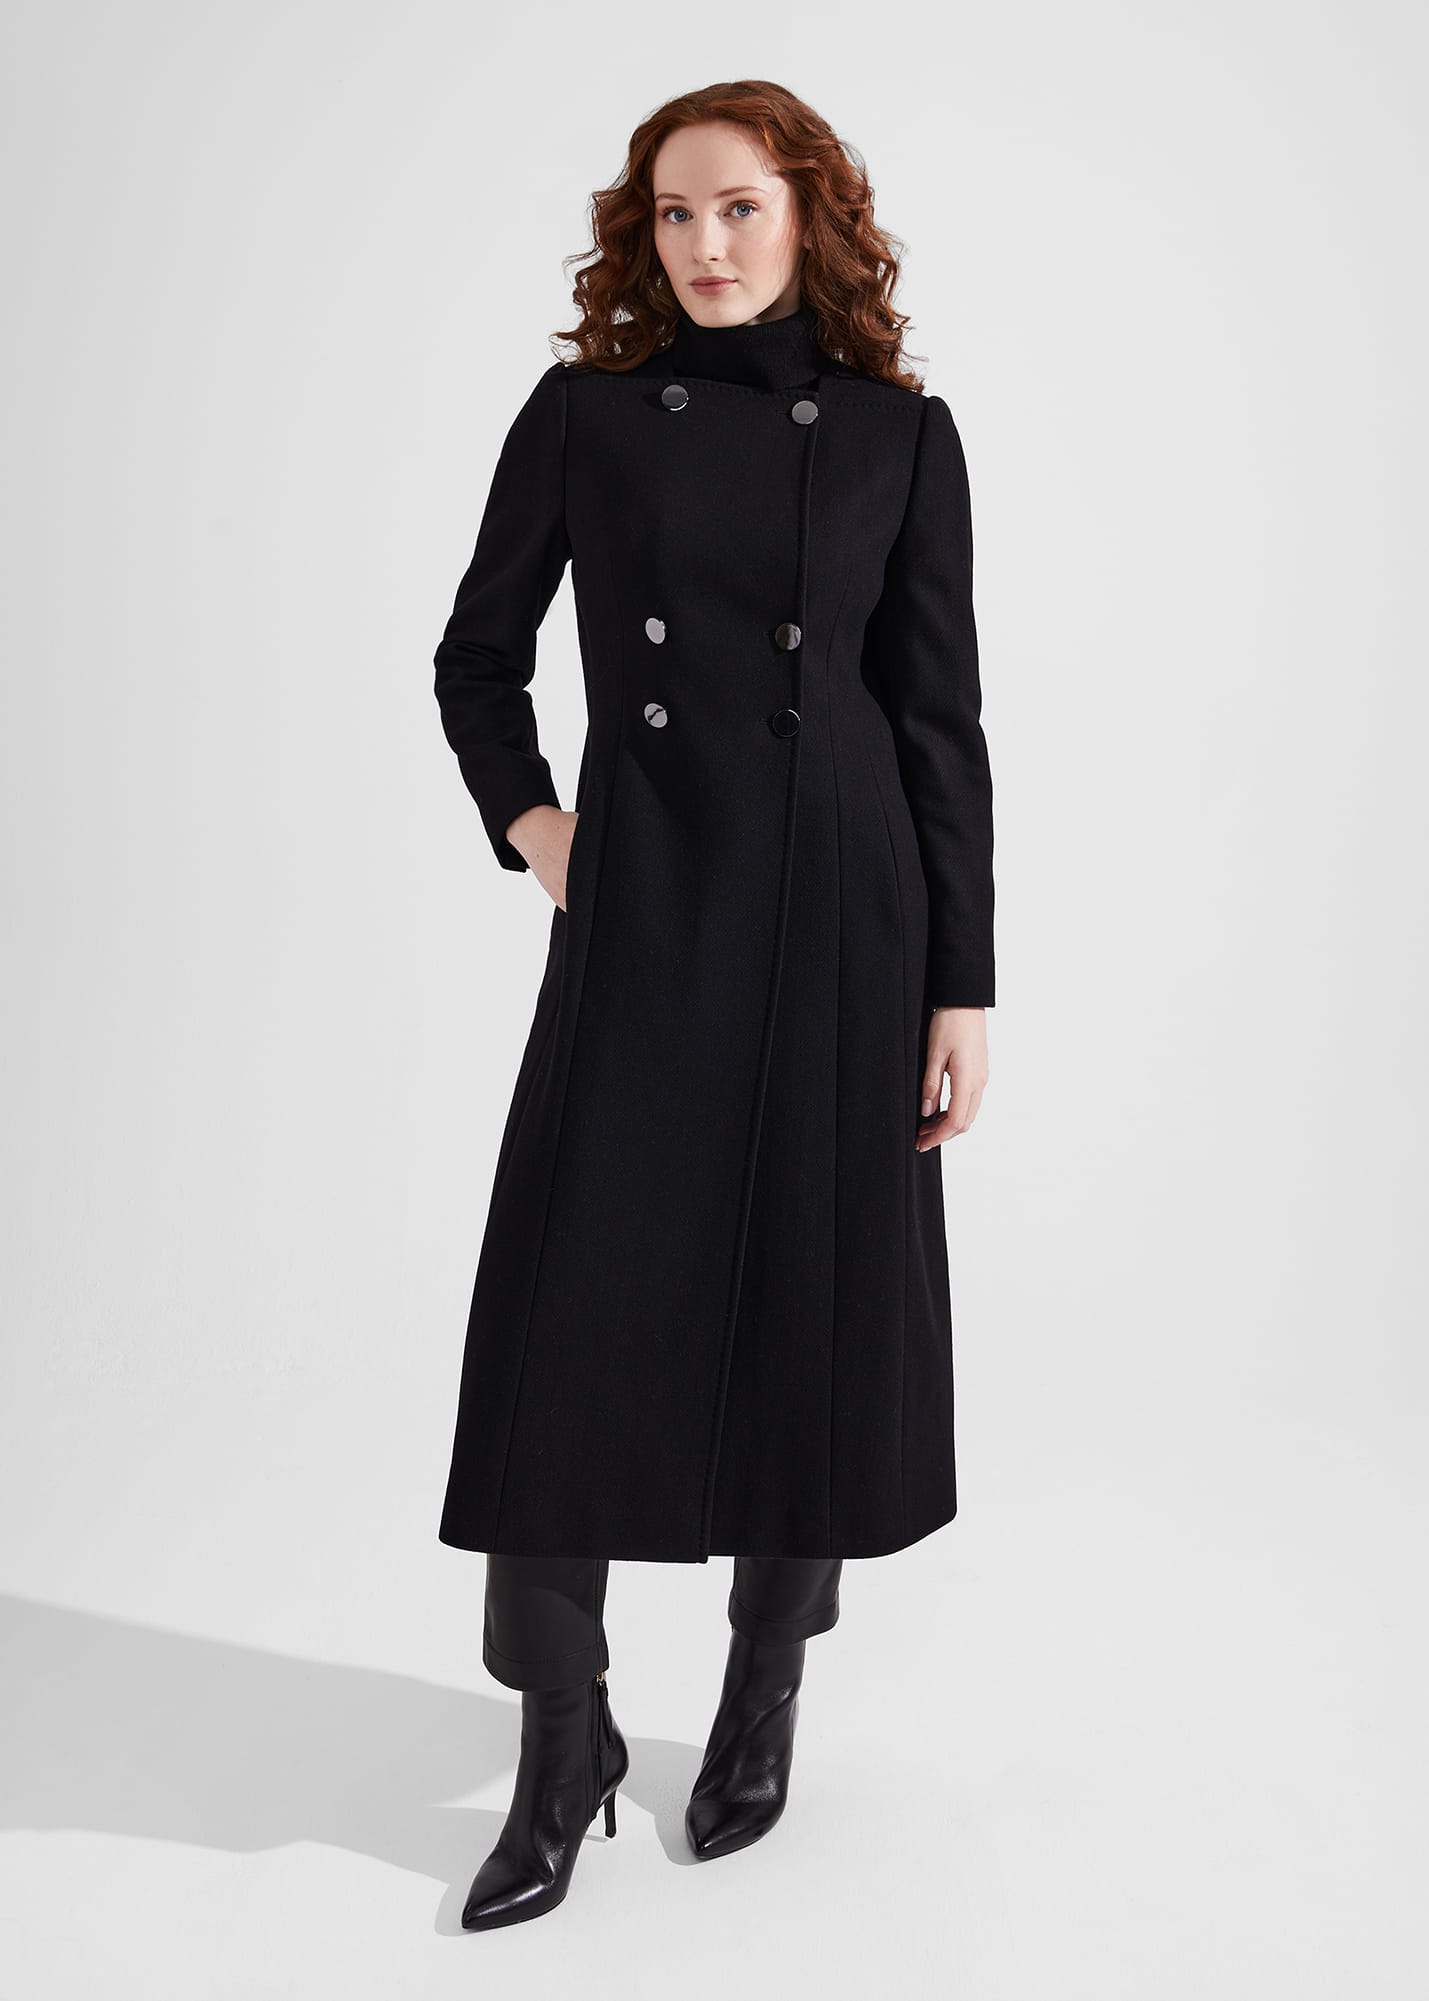 Hobbs Women's Lalena Wool Blend Coat - Black